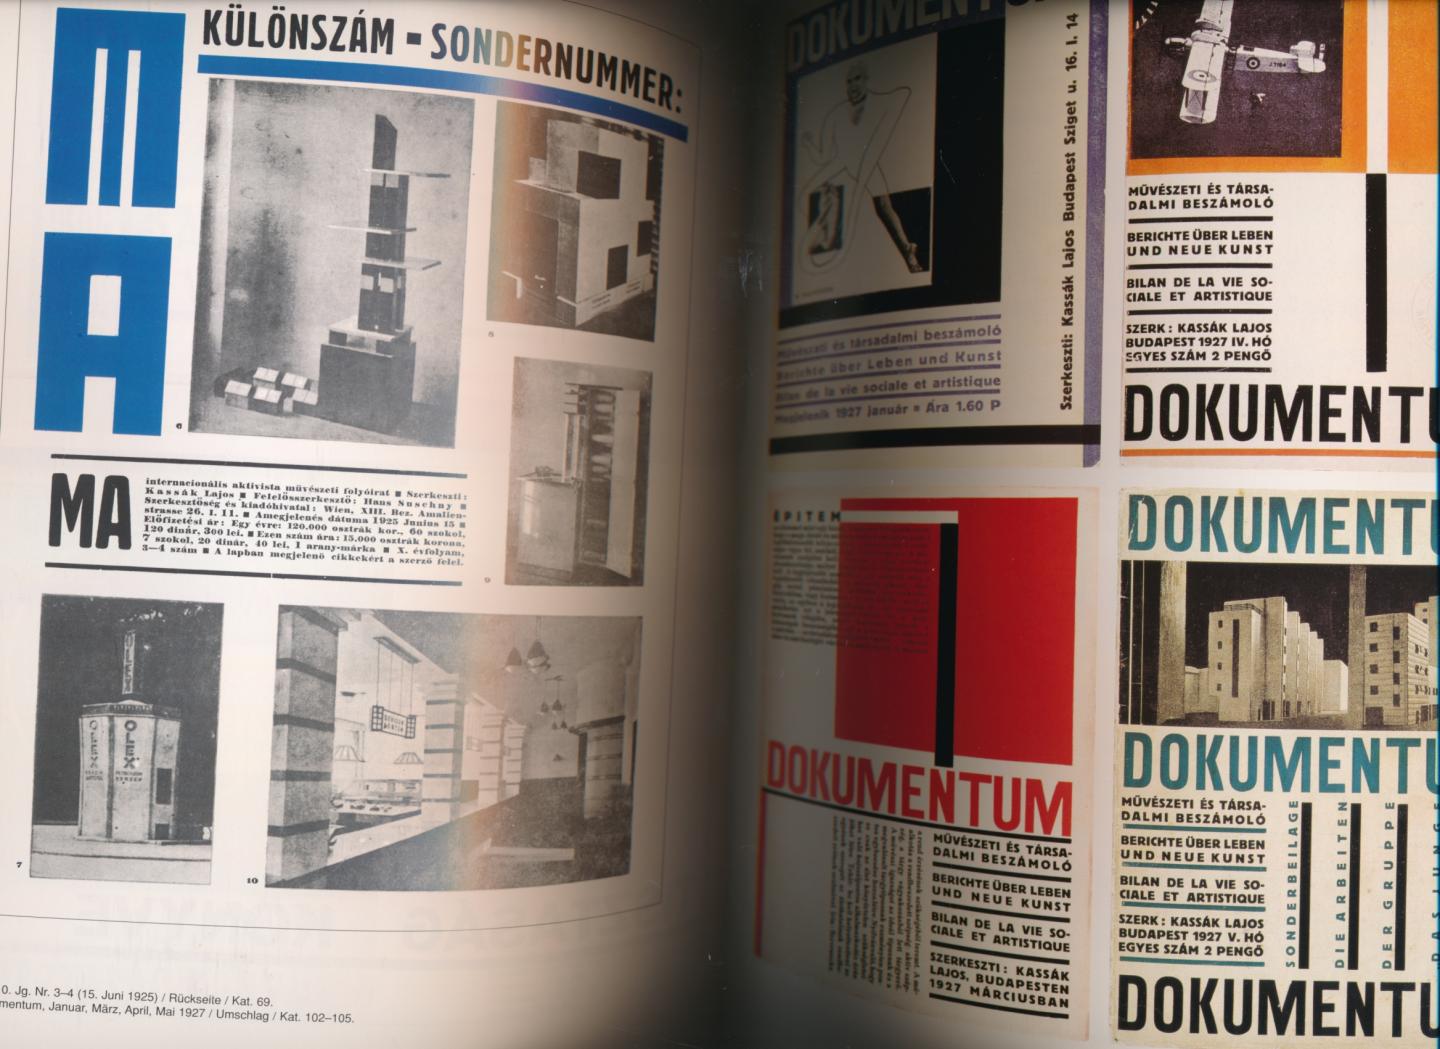 Lajos Kassak - Reklame und Moderne Typografie Texte und Bilder